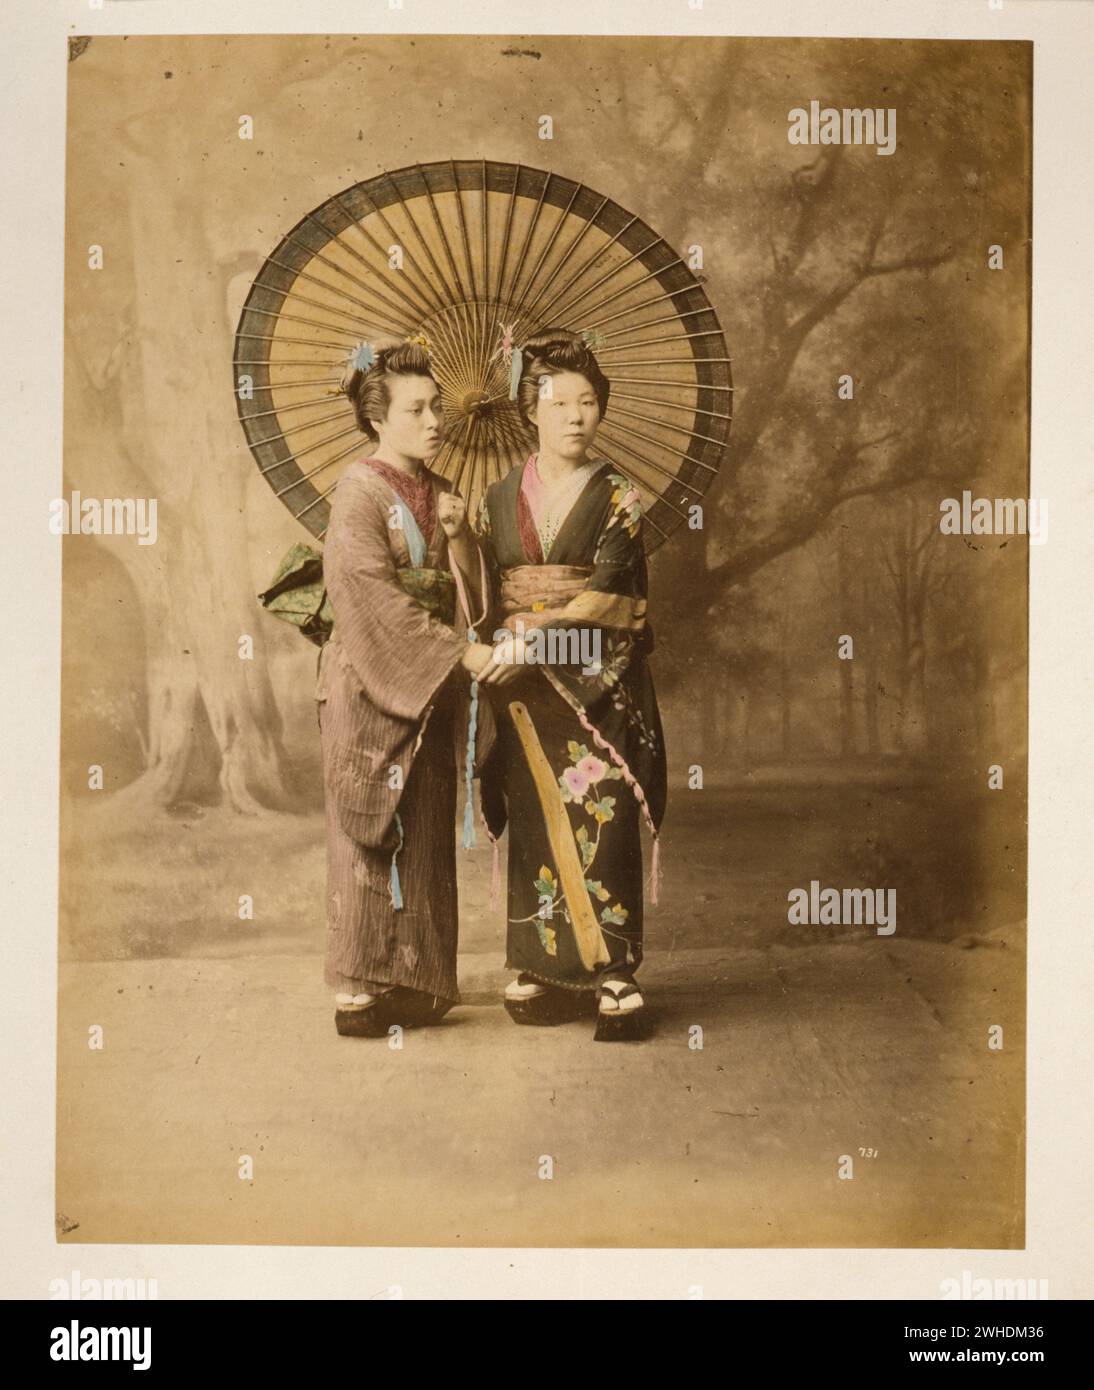 Zwei japanische Frauen im Kimono, durchgehendes Studioporträt mit Hintergrund, leicht nach rechts gerichtet, mit großem Sonnenschirm stehend und Hände haltend....Japan handkoloriert mit Aquarell-Fotografie um 1870er Jahre Stockfoto